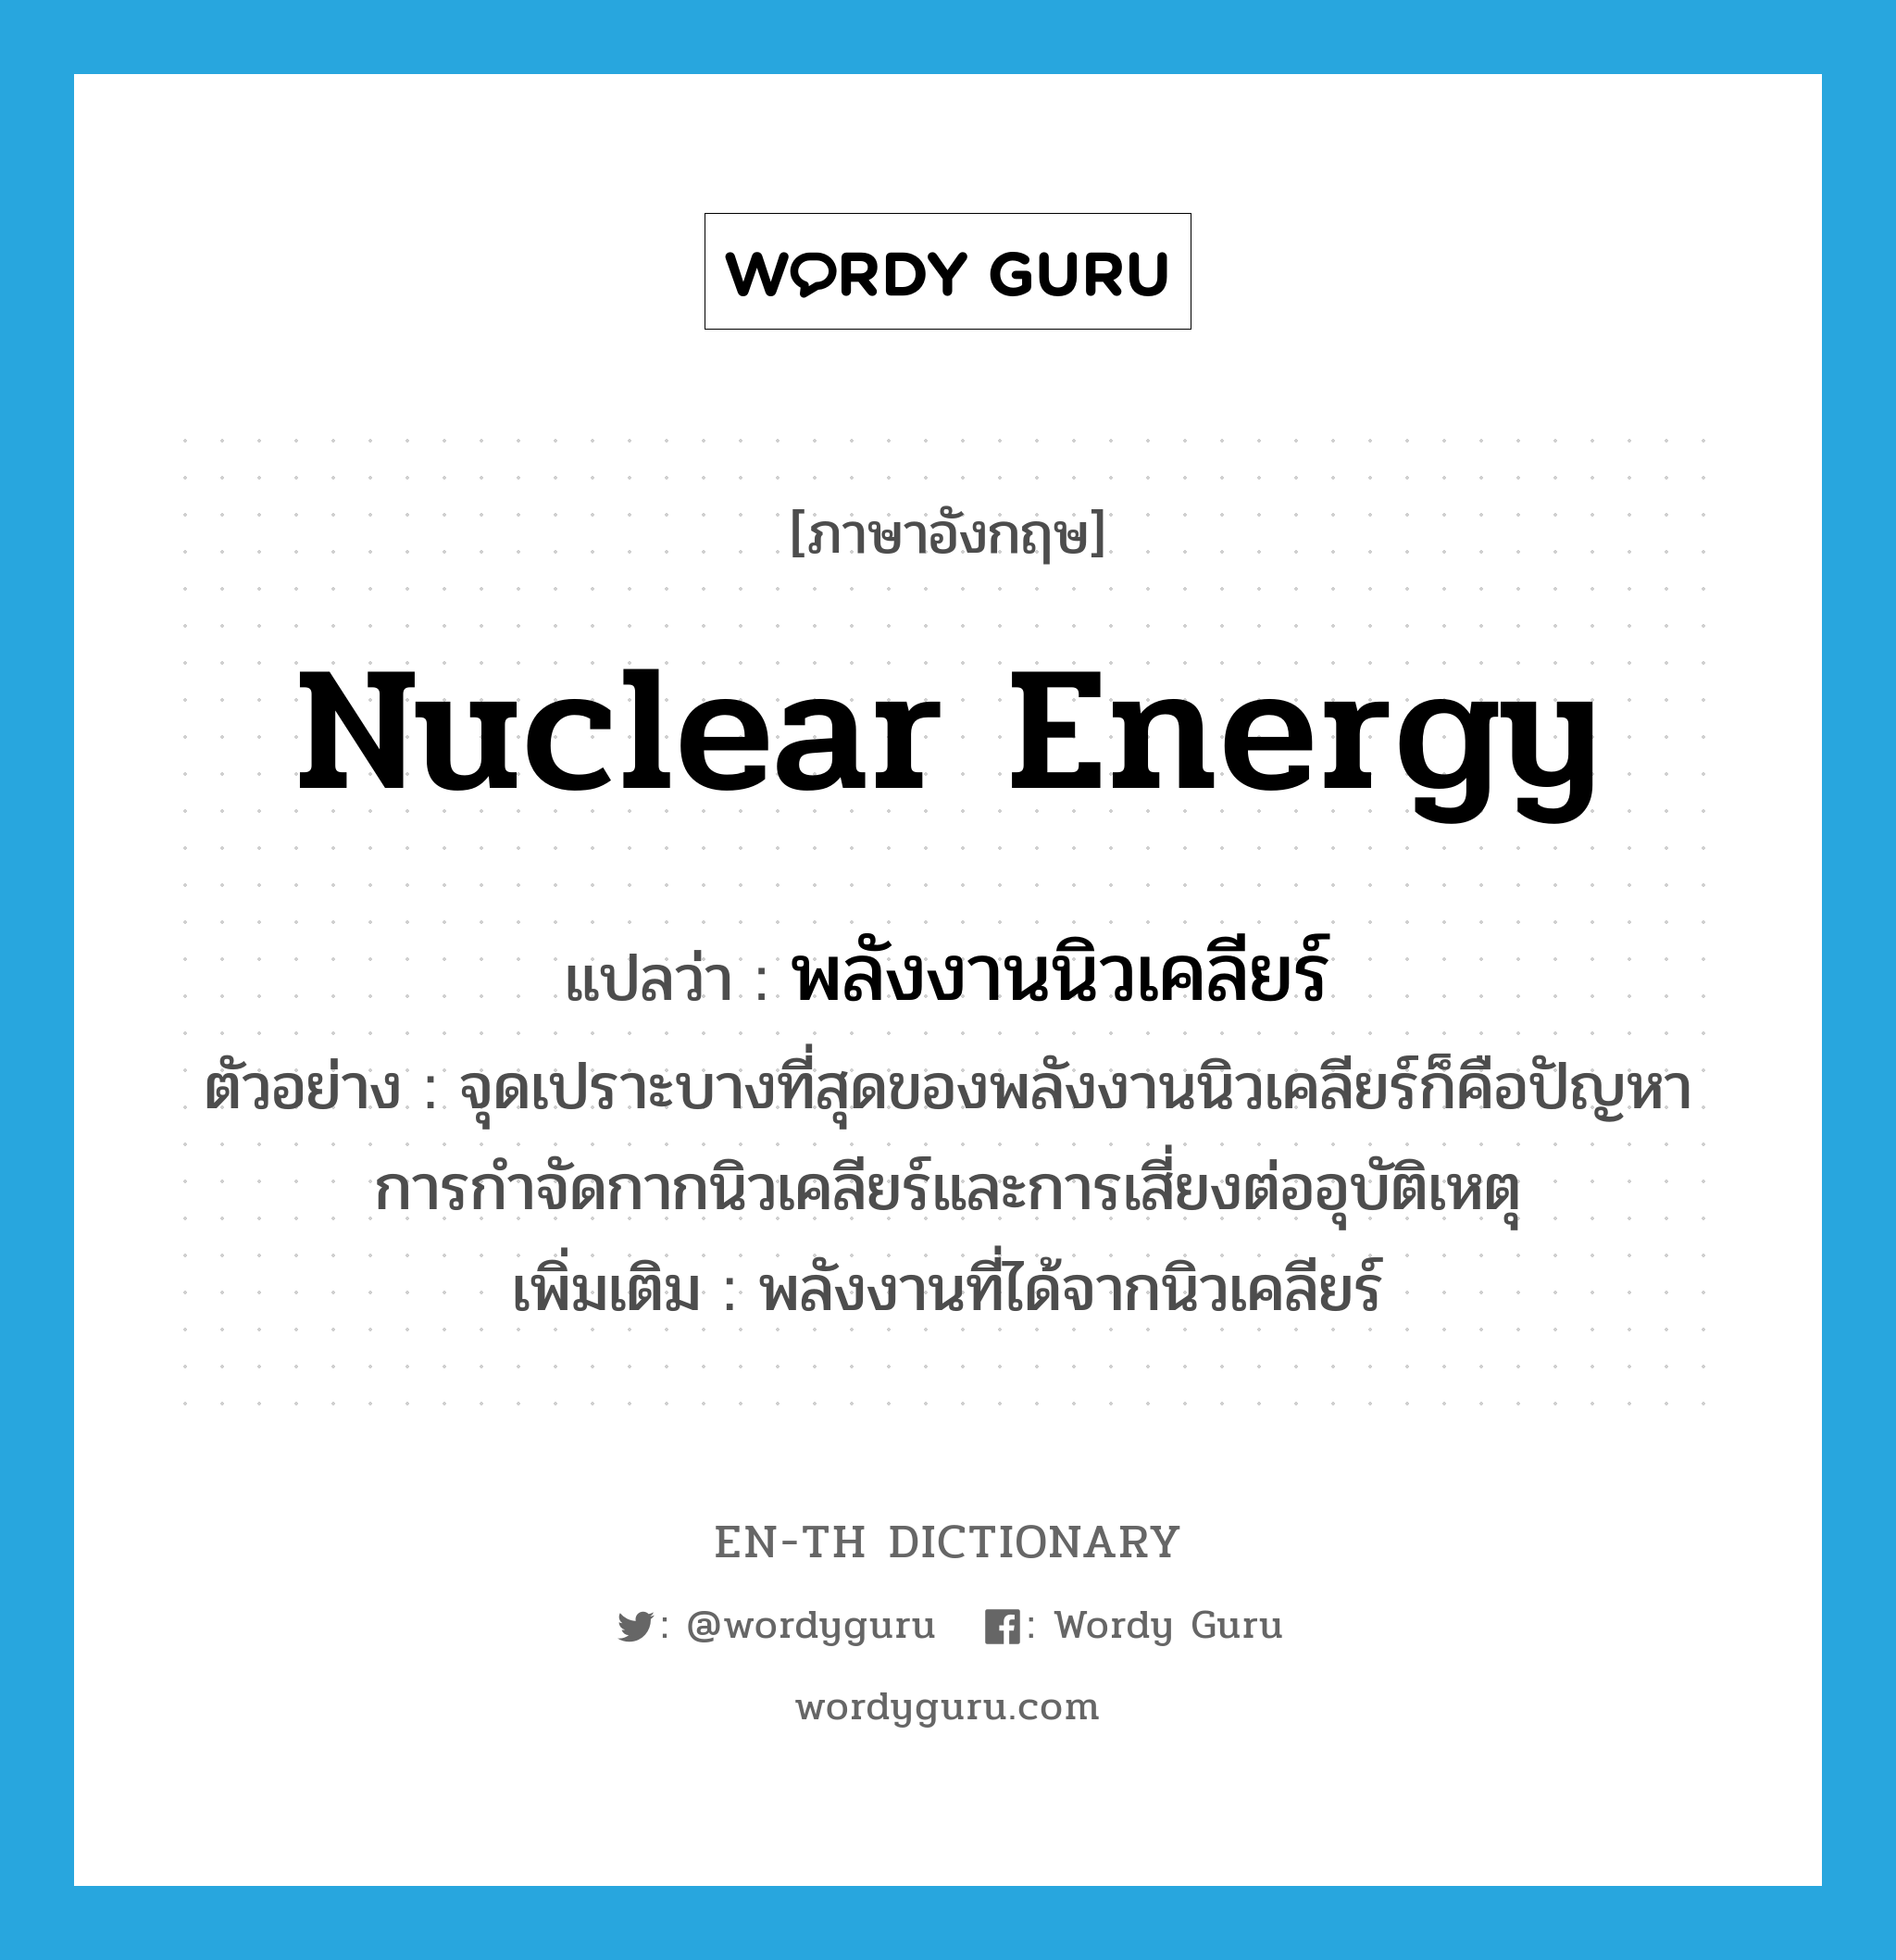 พลังงานนิวเคลียร์ ภาษาอังกฤษ?, คำศัพท์ภาษาอังกฤษ พลังงานนิวเคลียร์ แปลว่า nuclear energy ประเภท N ตัวอย่าง จุดเปราะบางที่สุดของพลังงานนิวเคลียร์ก็คือปัญหาการกำจัดกากนิวเคลียร์และการเสี่ยงต่ออุบัติเหตุ เพิ่มเติม พลังงานที่ได้จากนิวเคลียร์ หมวด N